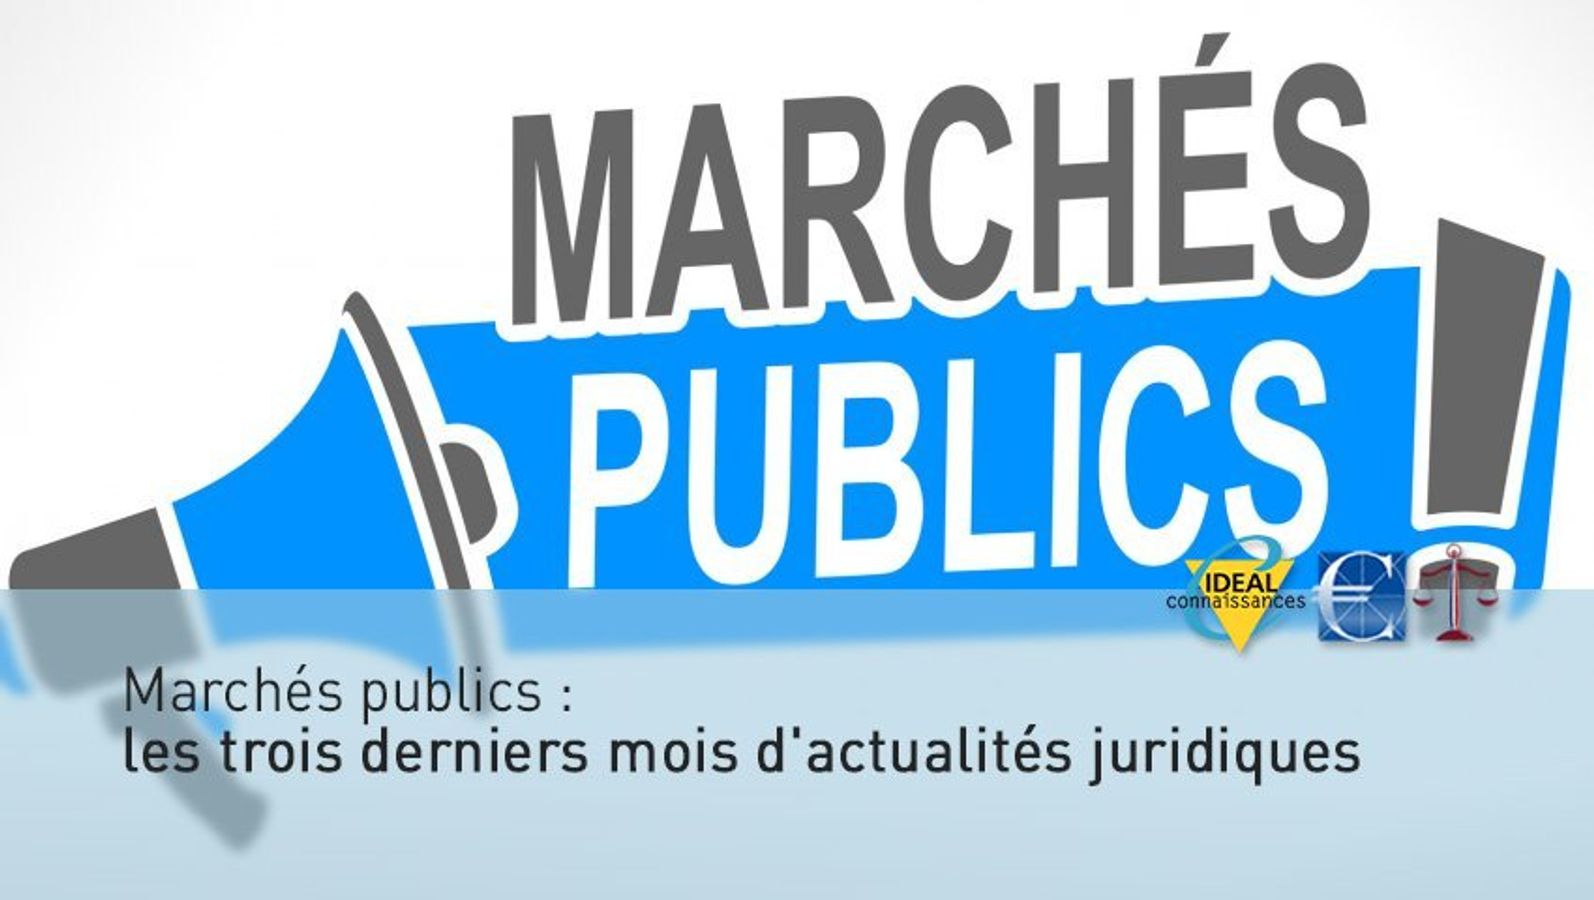 Marchés publics : les derniers mois d'actualités juridiques (2)